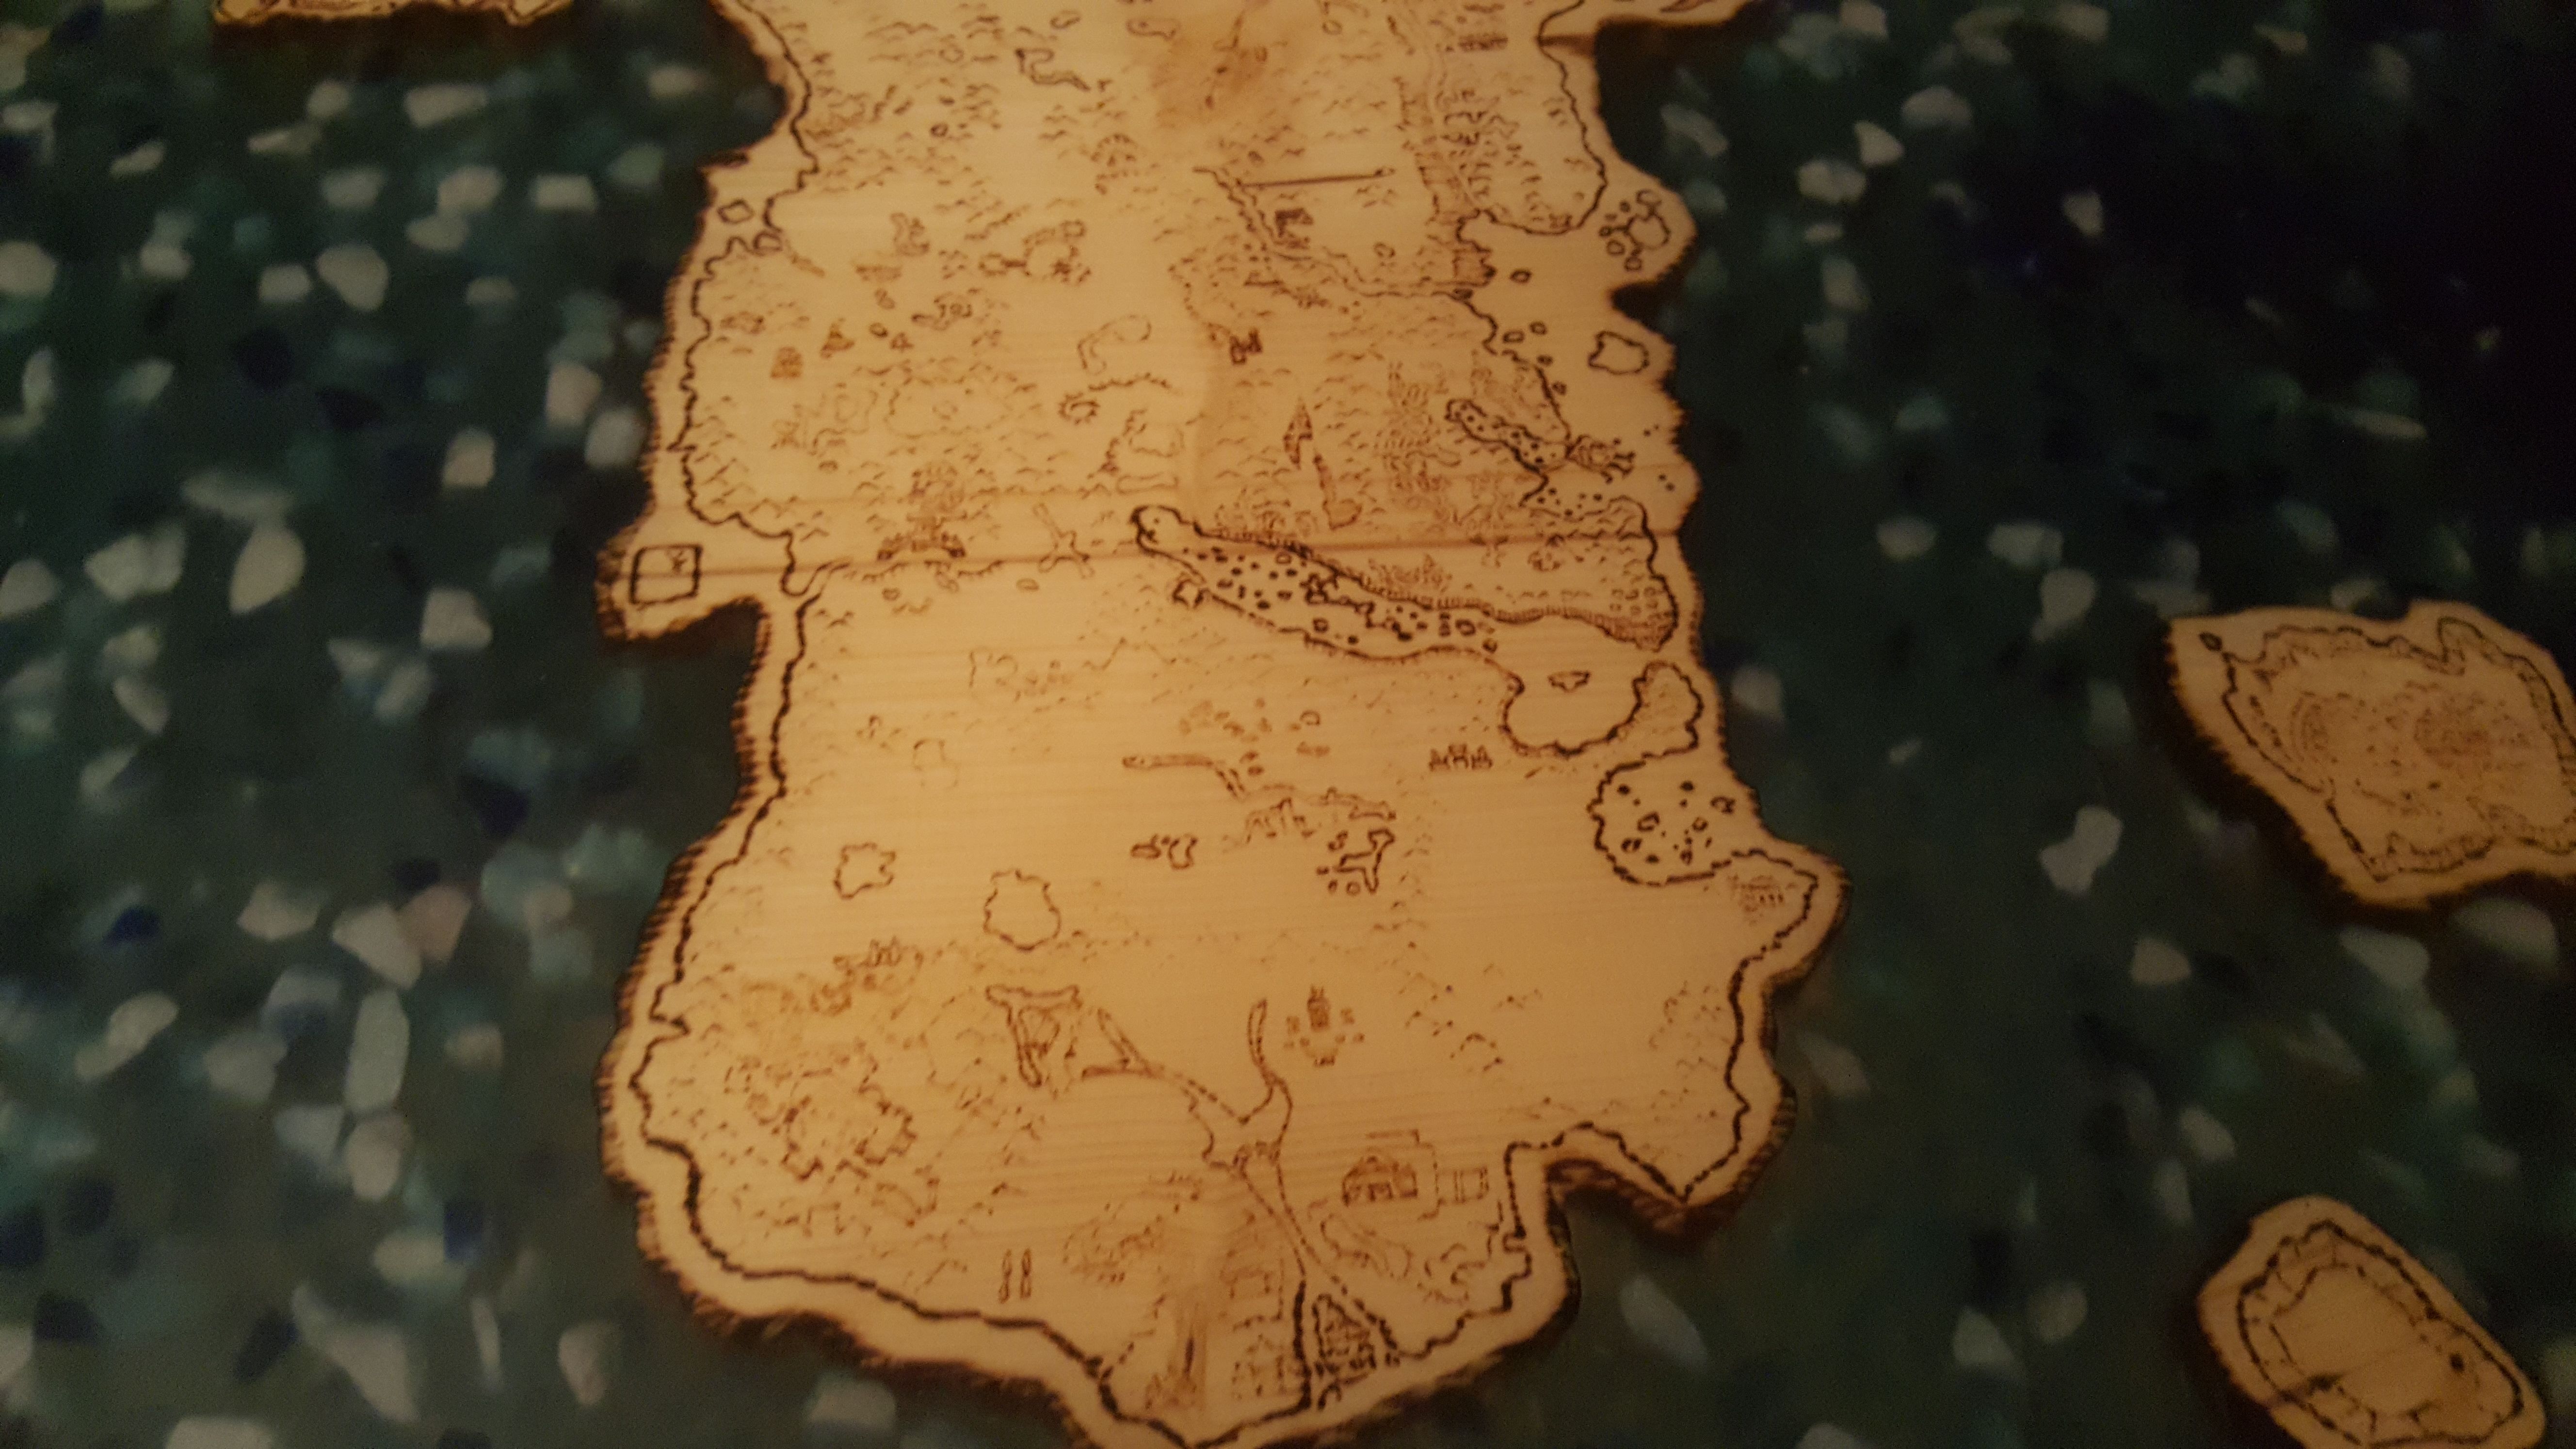 Столешница с картой Азерота.
Источник: reddit